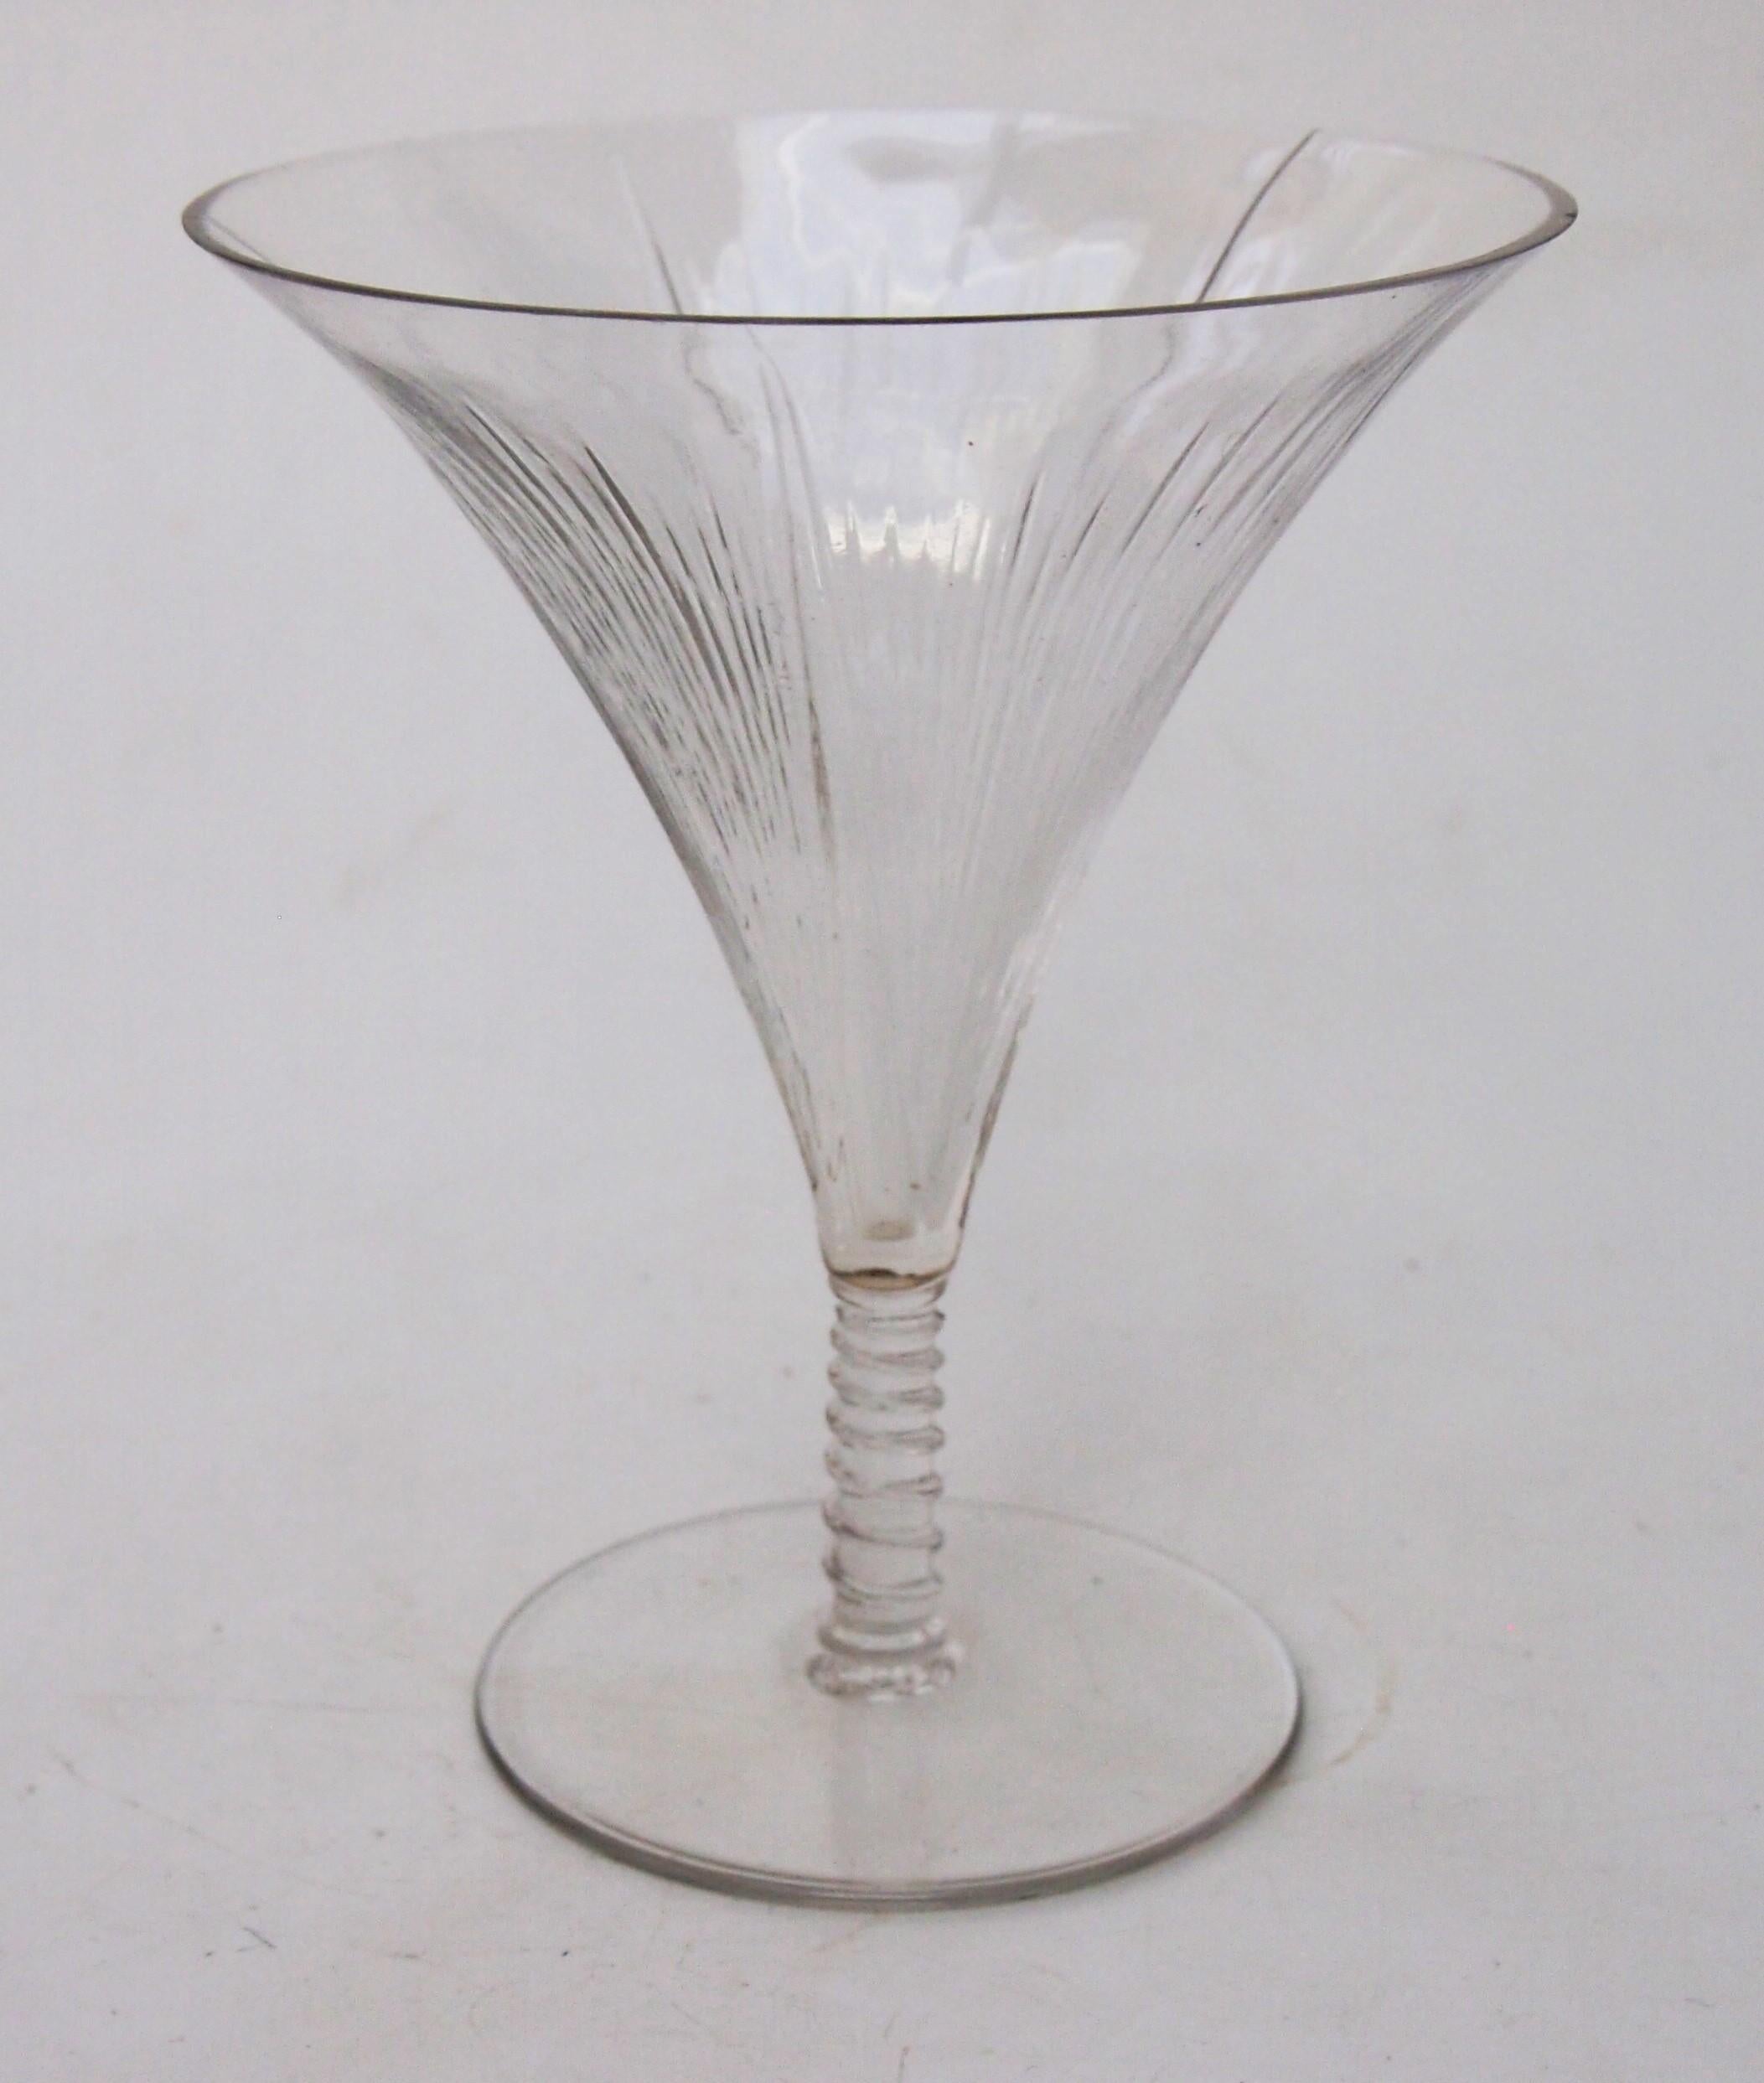 Rare et complexe verre à pied Liseron de René Lalique fait vers 1921 - signé à la base de la tige R Lalique France dans un petit cercle. Le modèle Liseron en forme de trompette est l'un des verres les plus rares faits par René Lalique - dans la